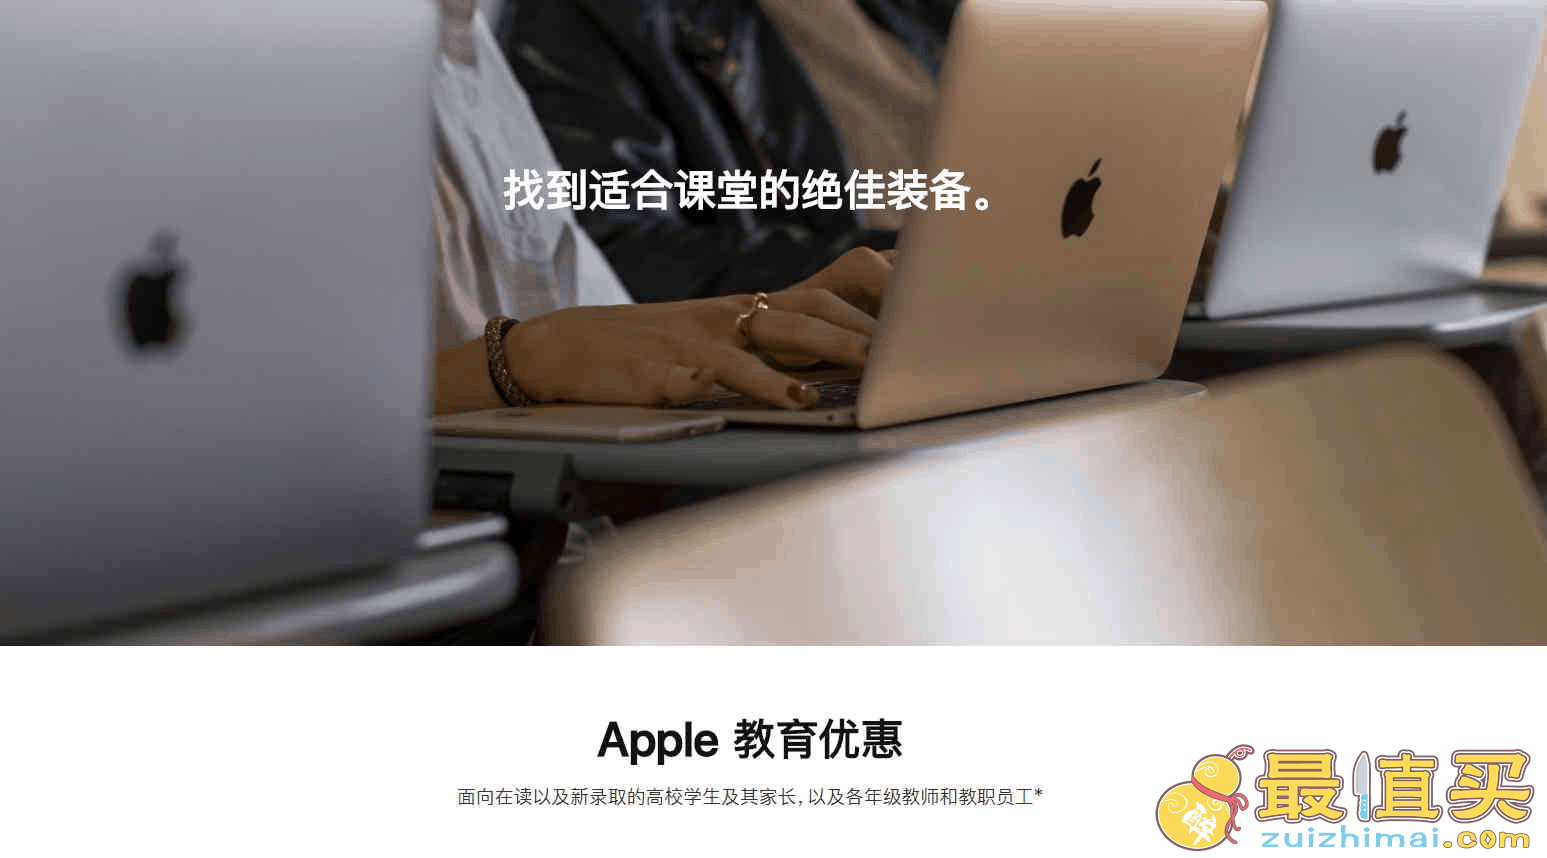 2021最新苹果教育优惠详细购买攻略以及注意事项 apple中国官网如何选购教育优惠的产品